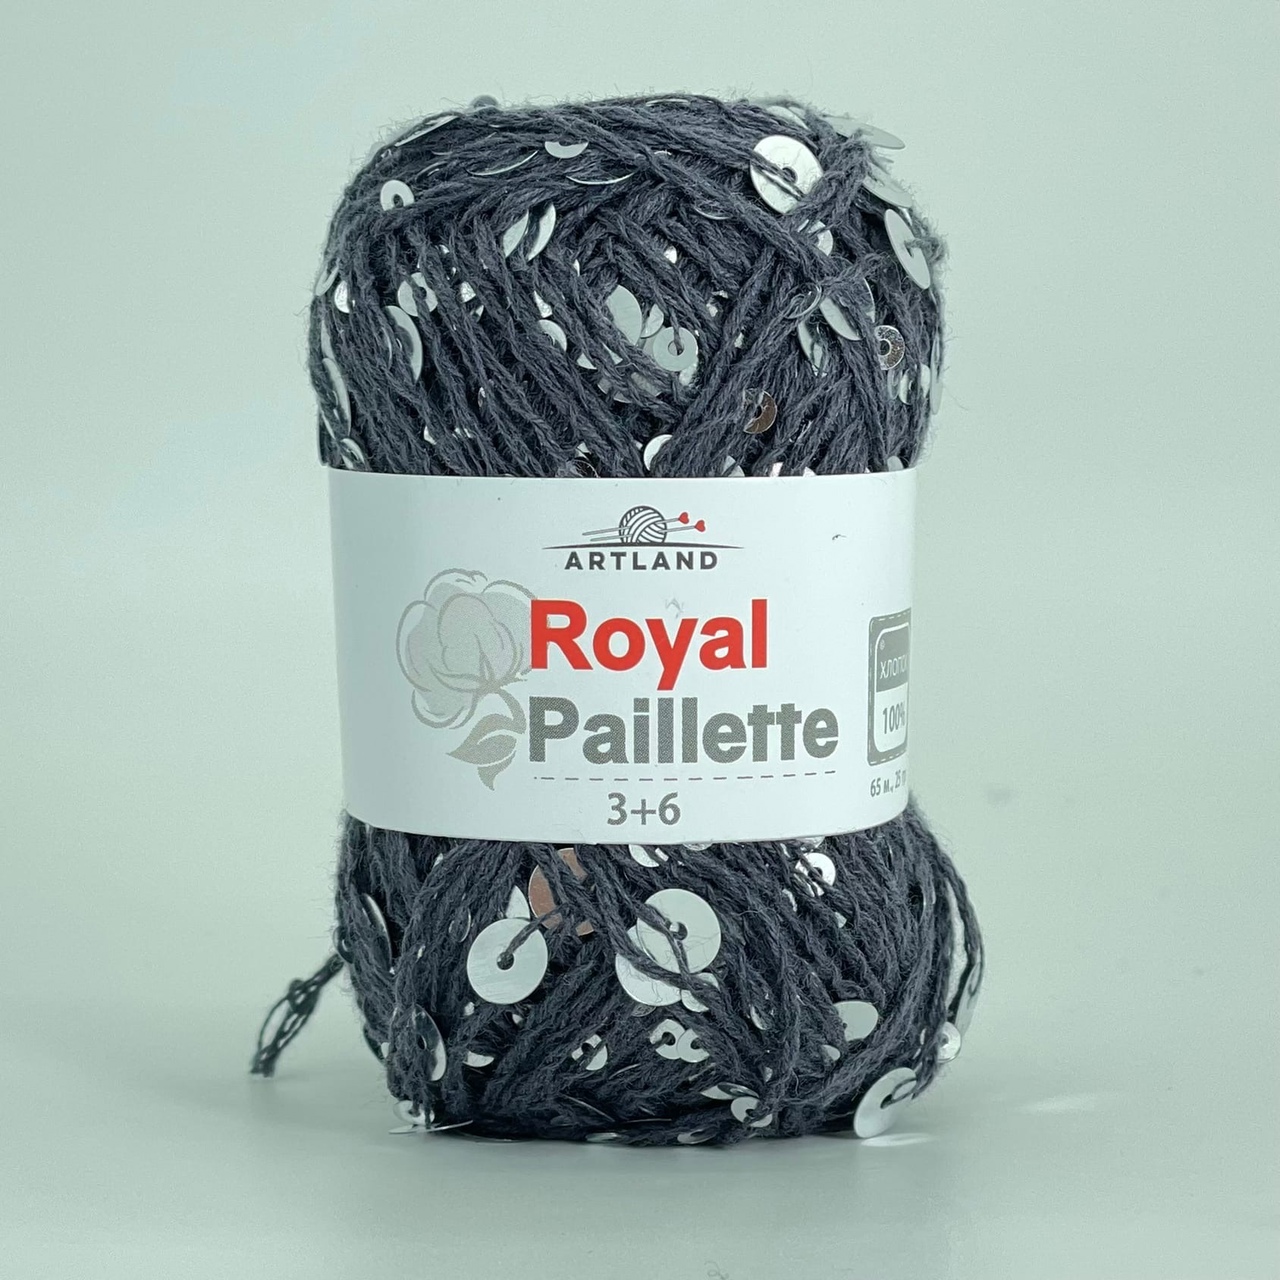 Artland Royal Paillette добавочная нить с пайетками на хлопке - интернет магазин Стелла Арт